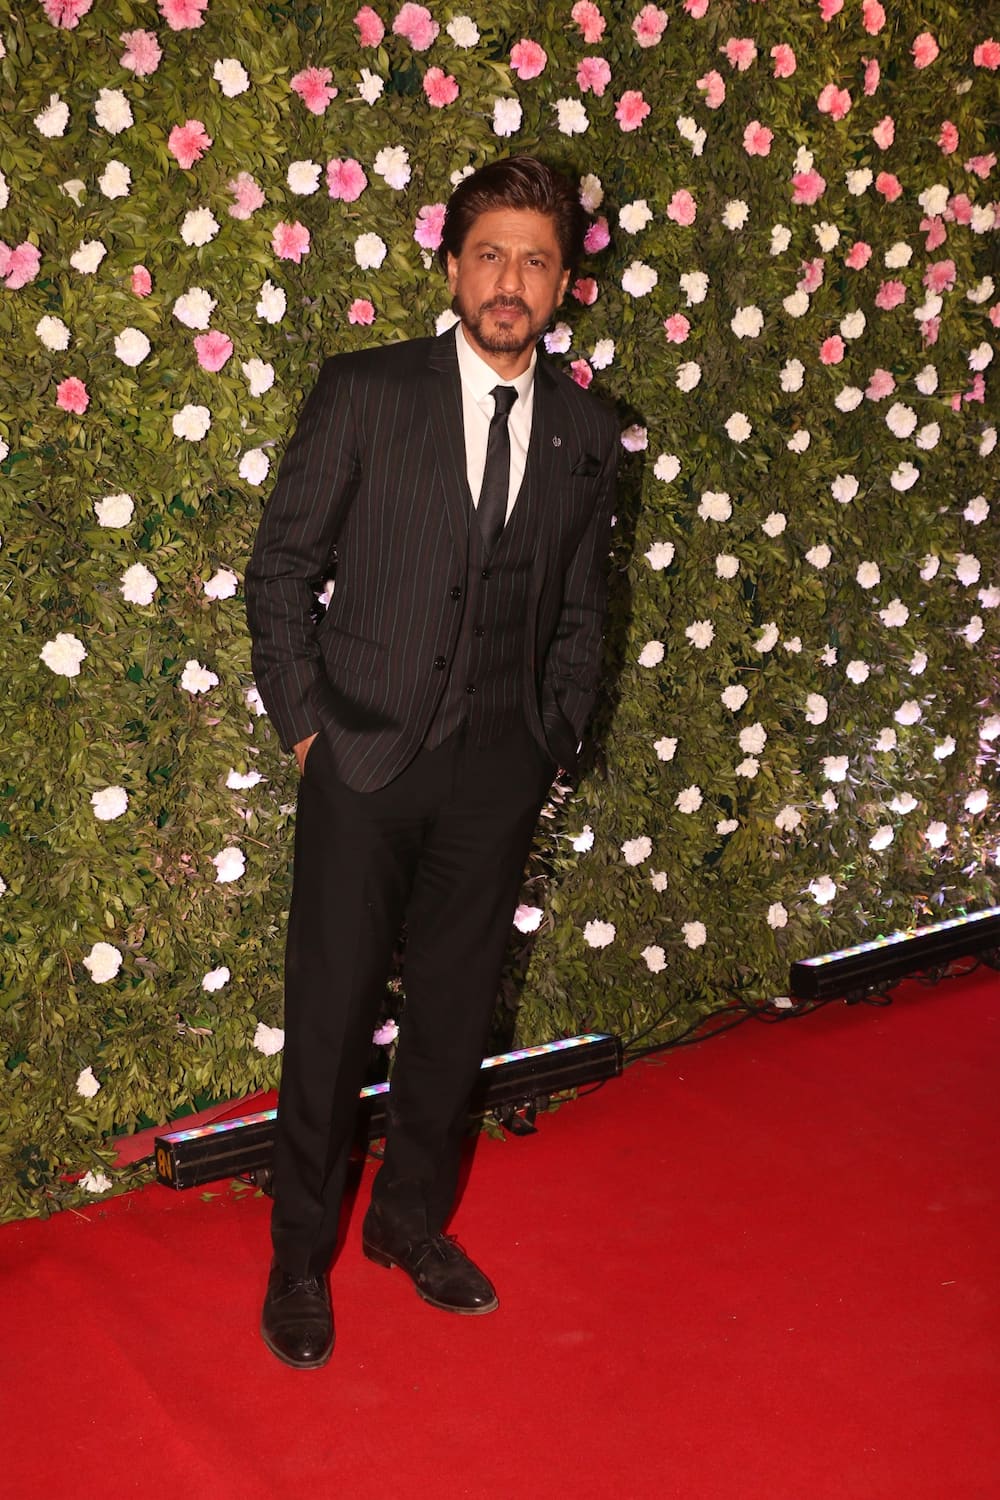 How much is Shah Rukh Khan'ss net worth?